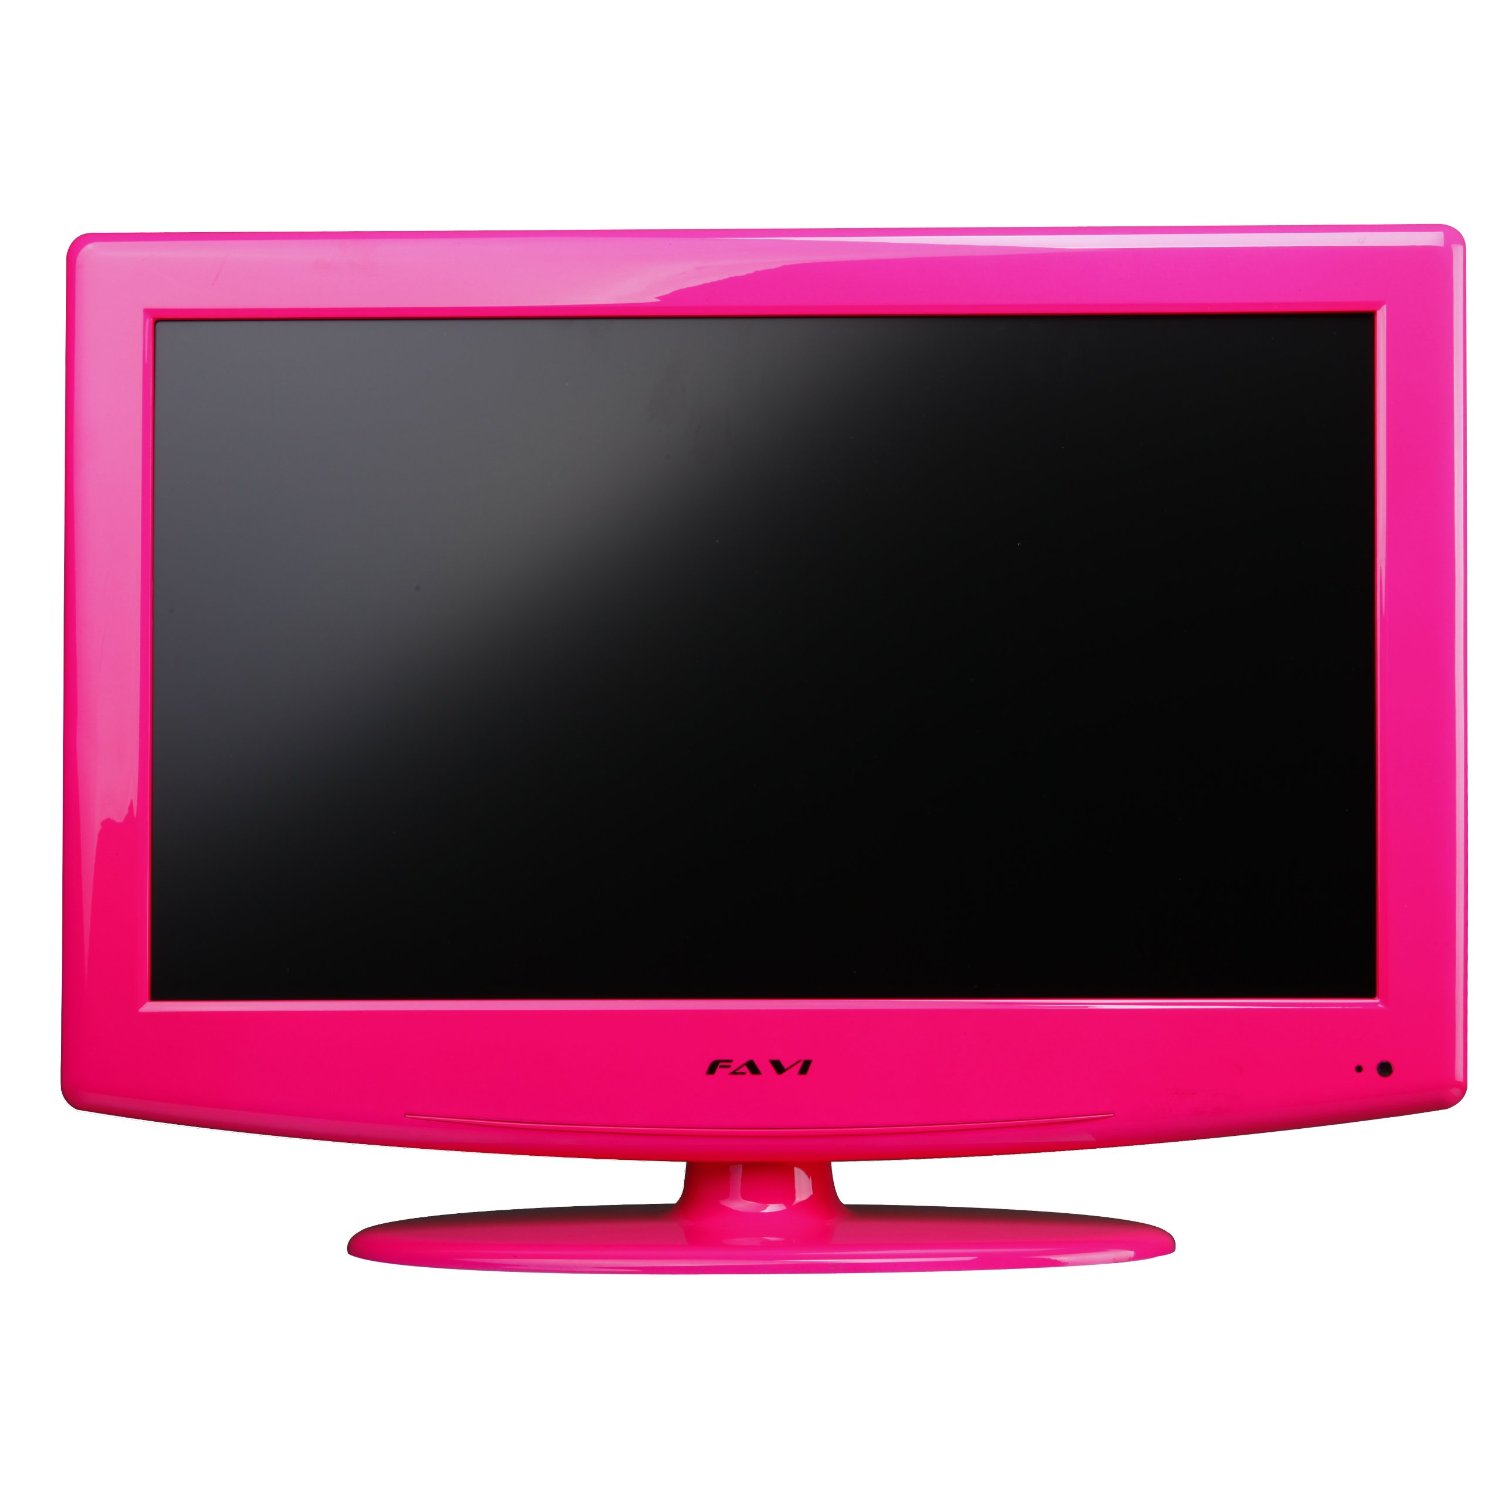 Купить телевизор для компьютера. Маленький телевизор. Розовый телевизор. Розовый монитор. Розовый монитор для компьютера.